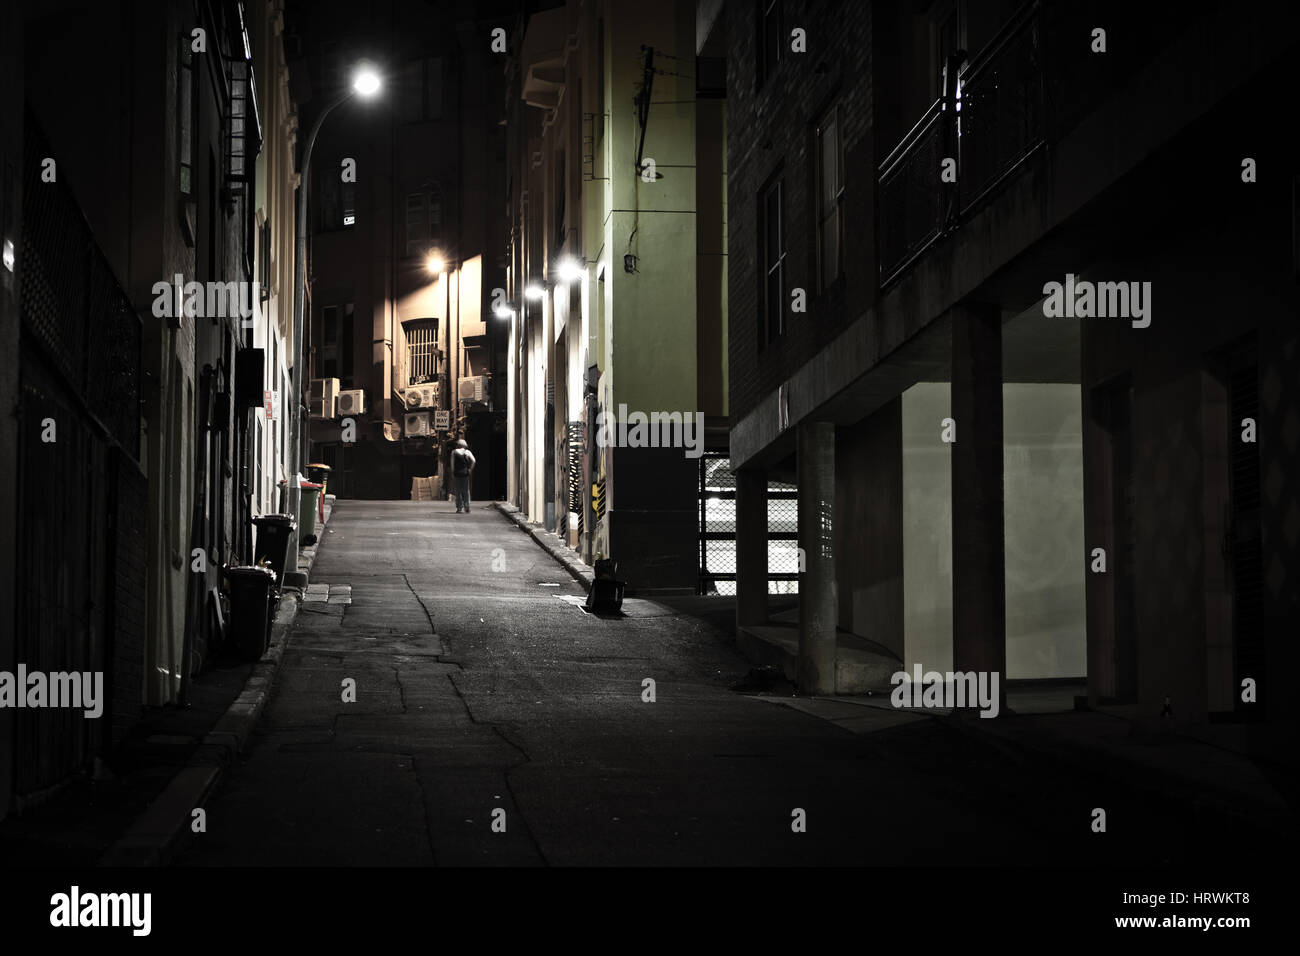 Back alley in Darlinghurst, Sydney after dark. Stock Photo